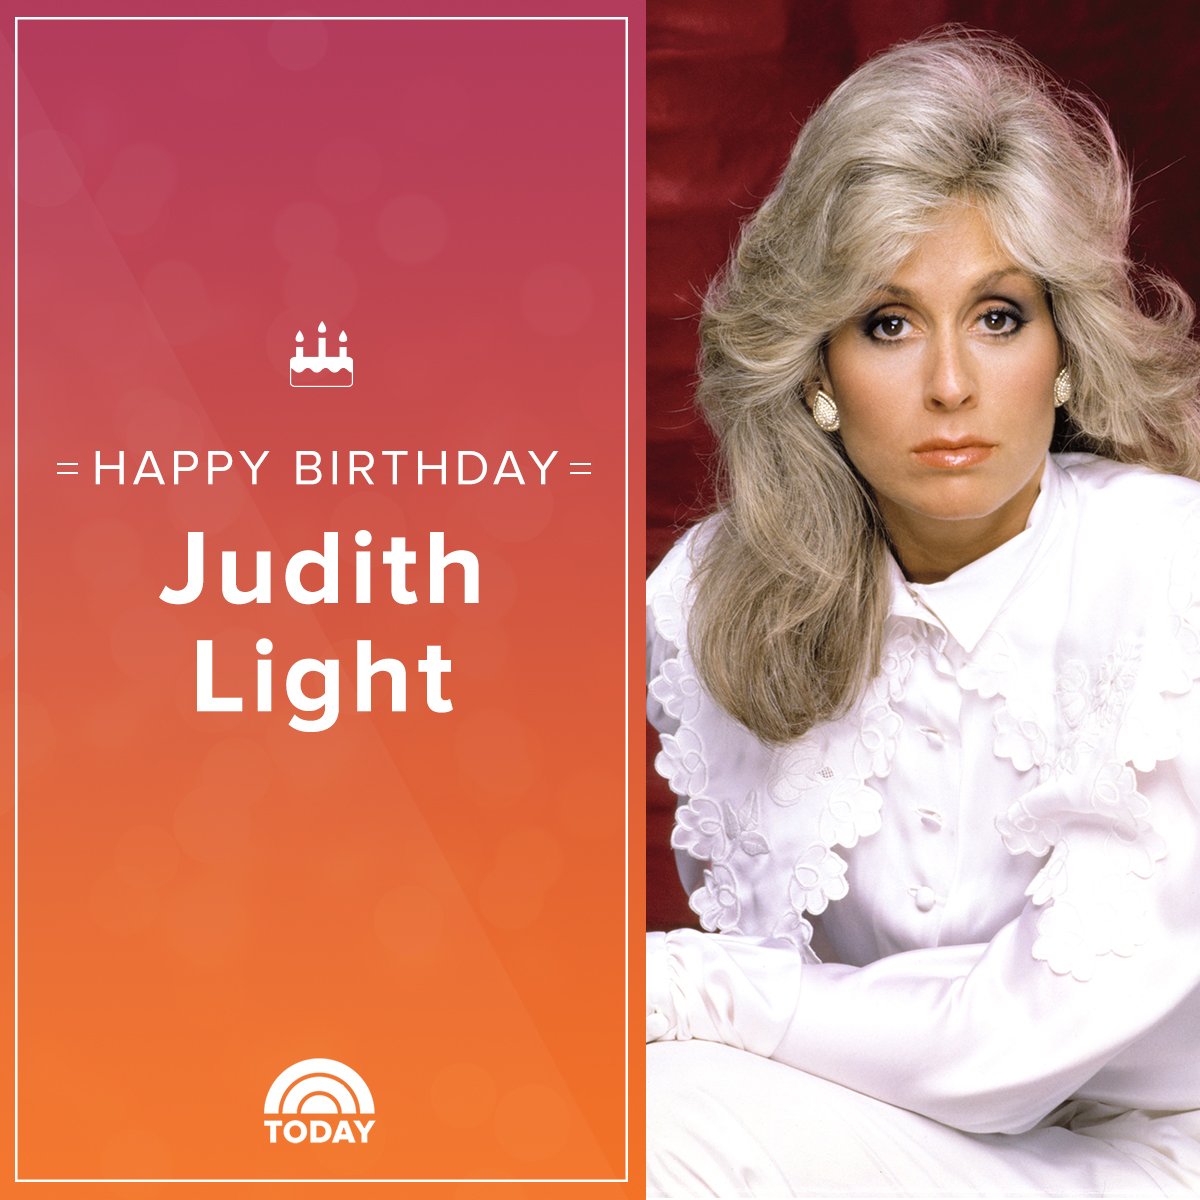 Happy birthday, Judith Light you\re still the boss!  